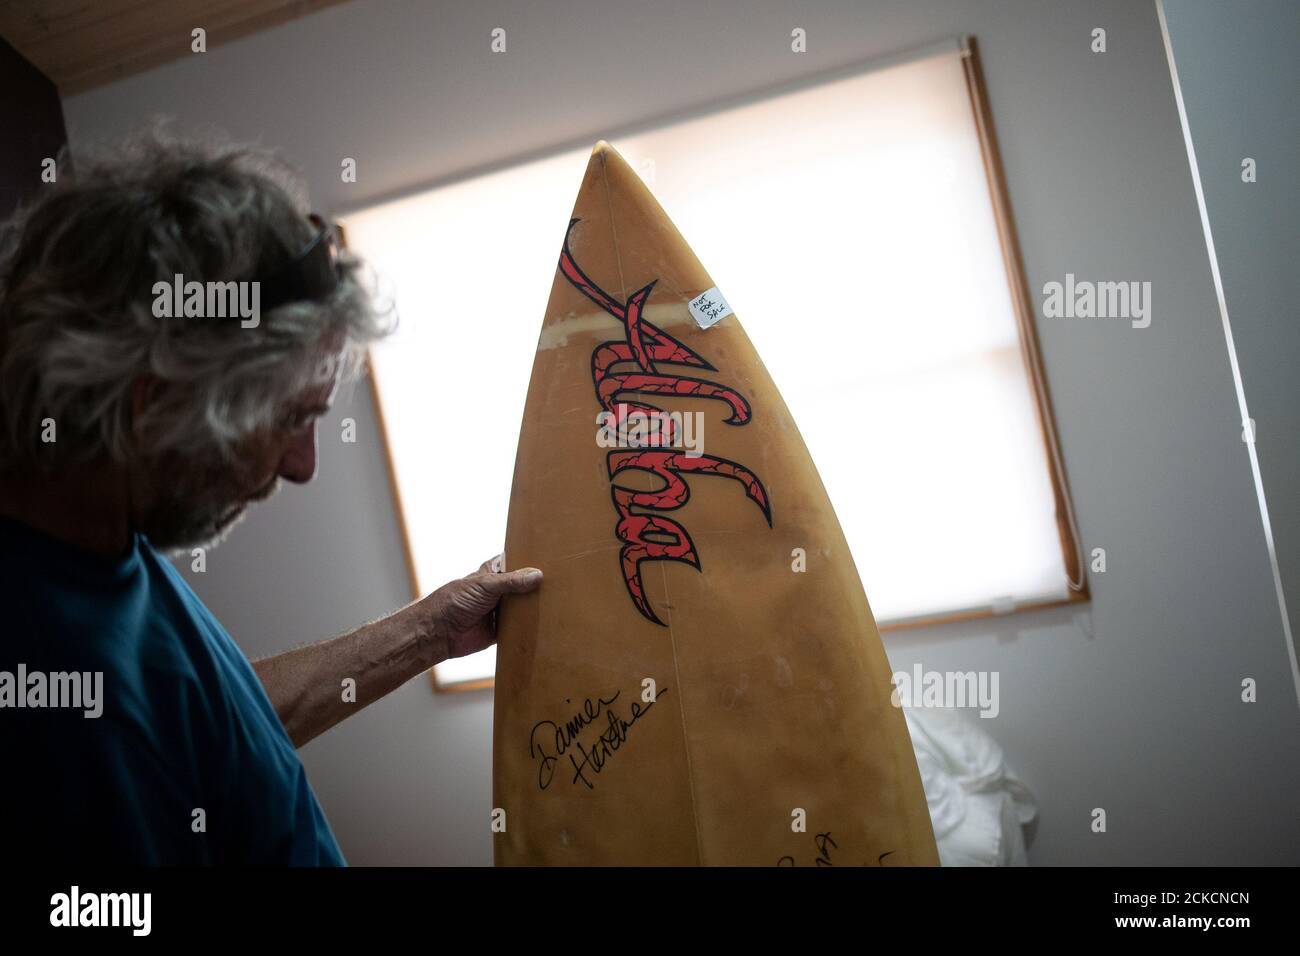 Il surfista australiano David Ford, 62 anni, mostra una delle poche tavole da surf rimaste della sua collezione vintage di tavole da surf distrutte nei recenti incendi sul lago Conjola, Australia, 15 gennaio 2020. Foto scattata il 15 gennaio 2020. REUTERS/Alkis Konstantinidis Foto Stock